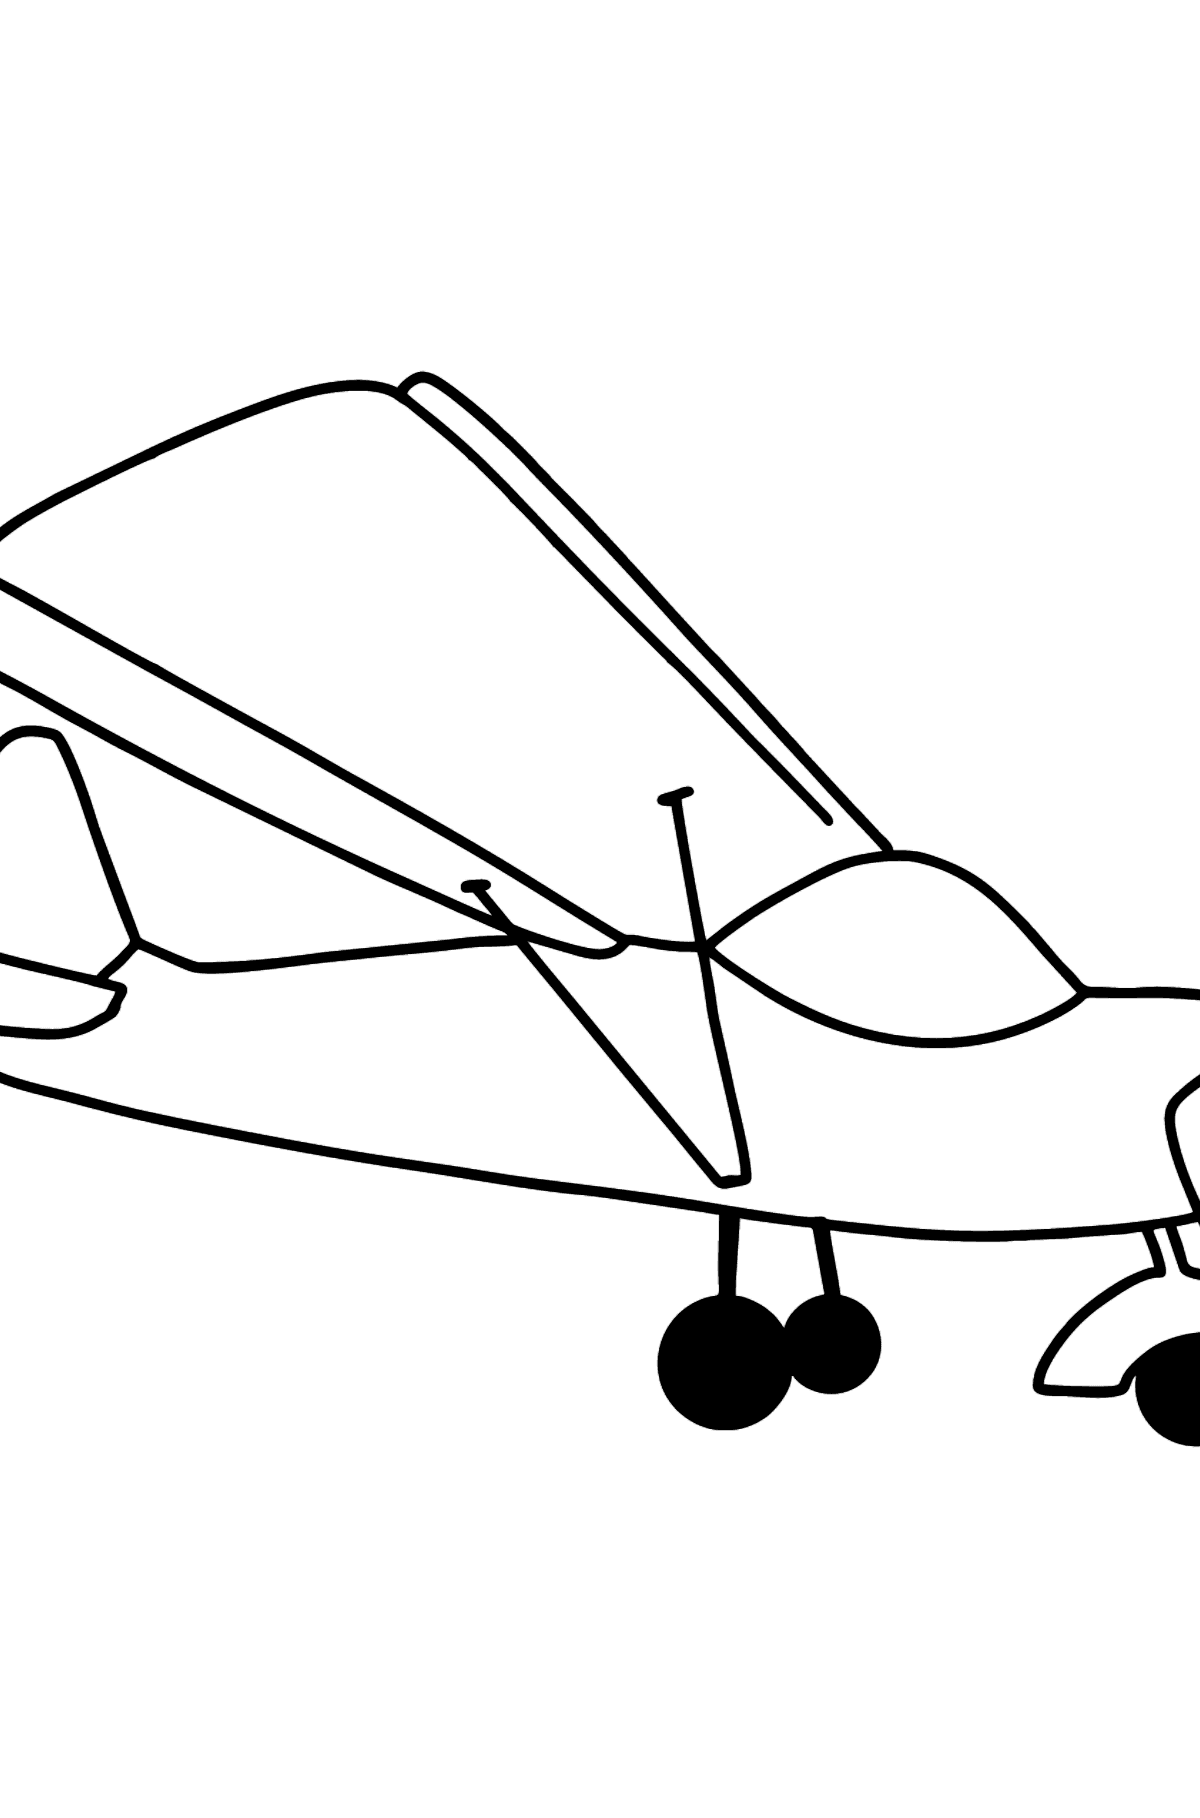 Kleurplaat klein vliegtuig - kleurplaten voor kinderen